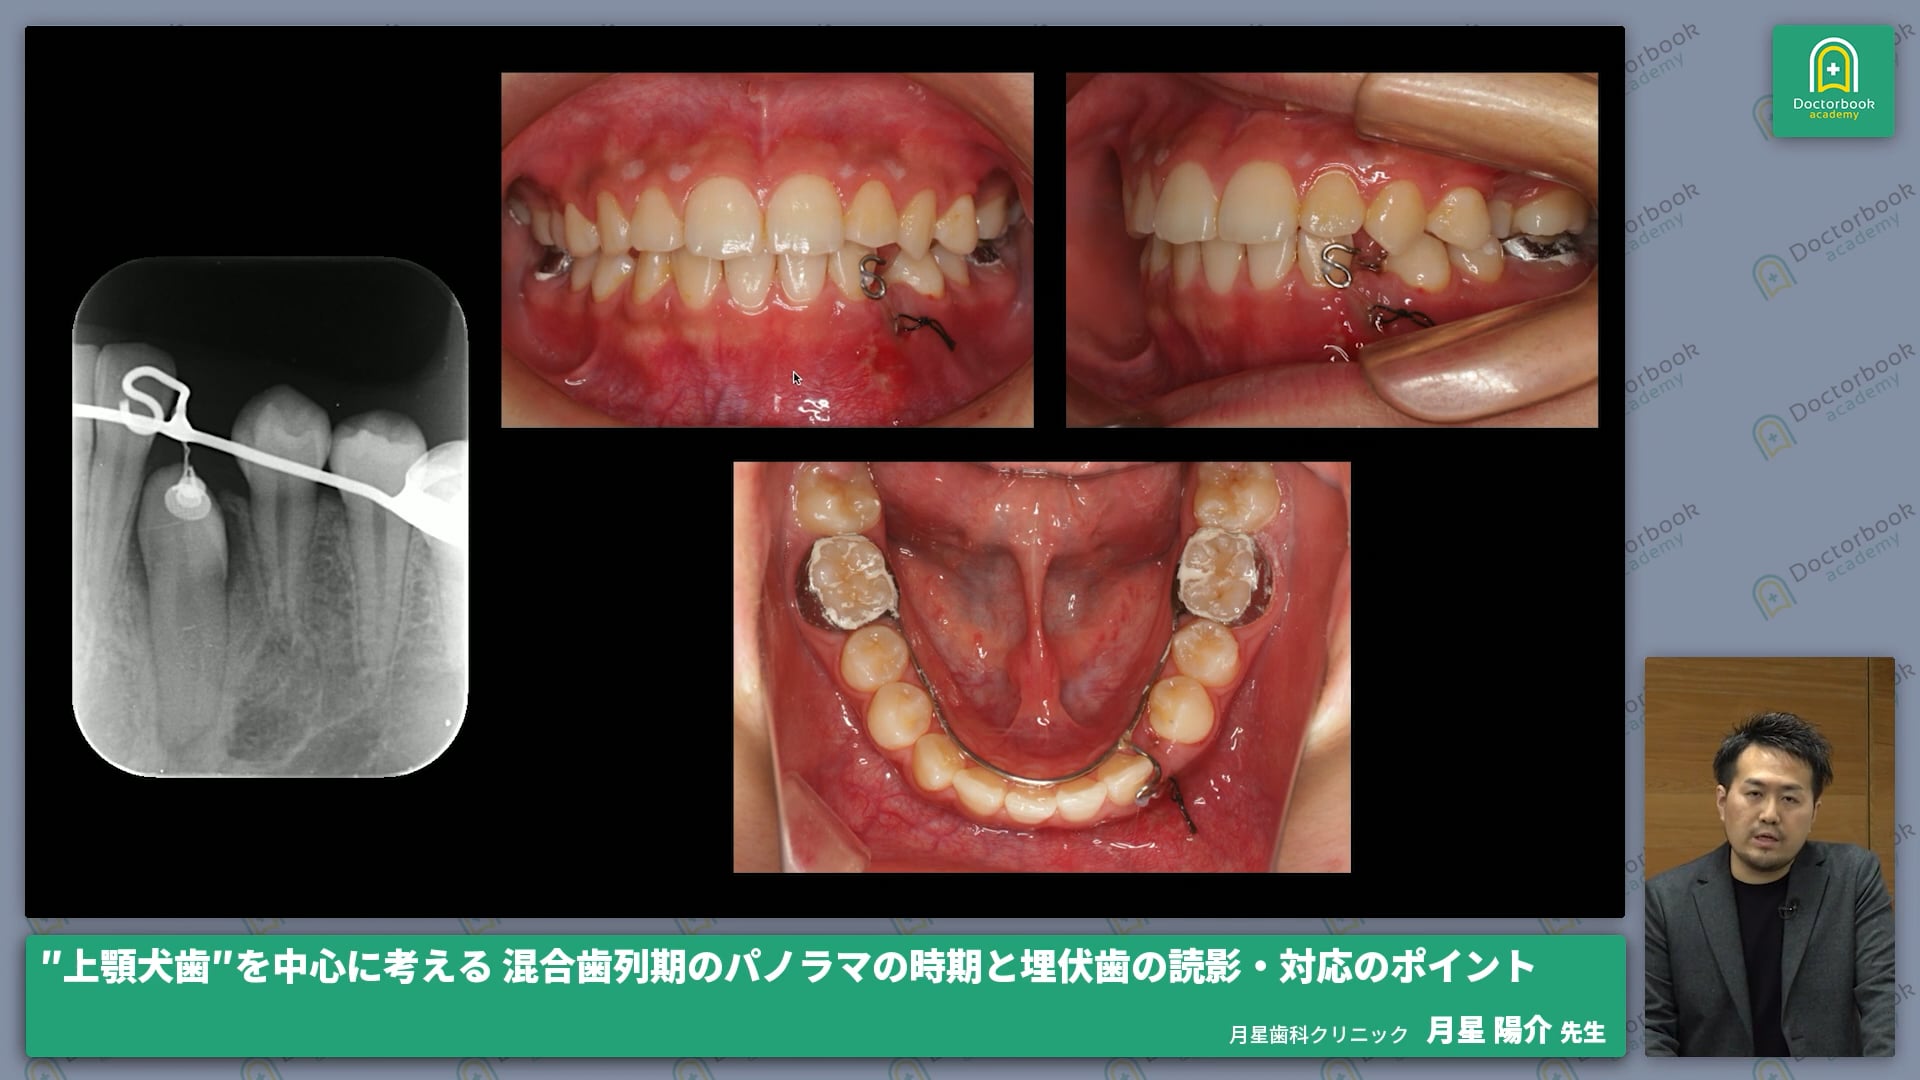 上顎犬歯を中心に考える 混合歯列期のパノラマの時期と埋伏歯の読影・対応のポイント